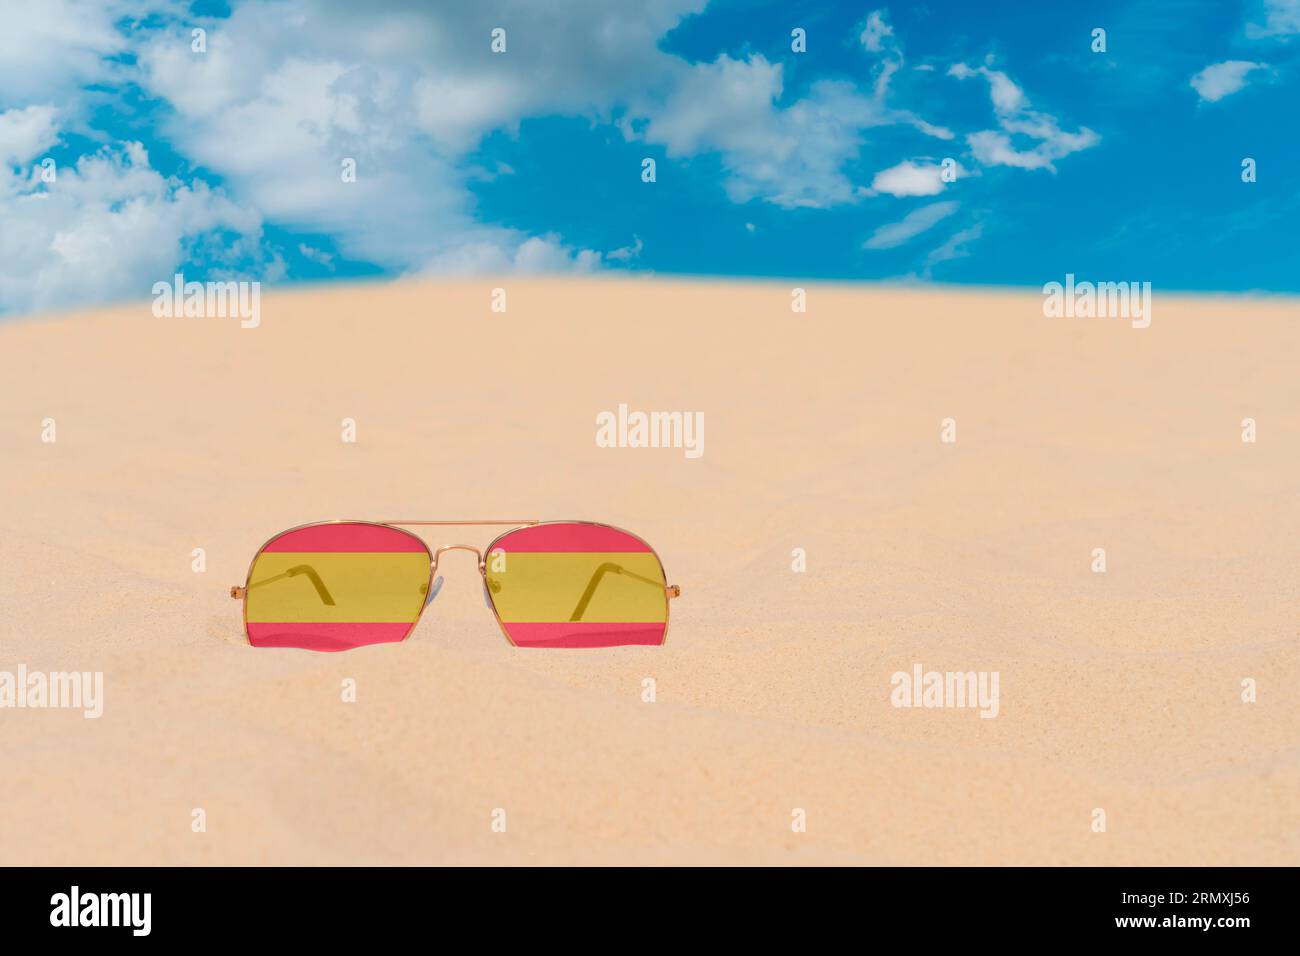 Gli occhiali da sole con occhiali in forma di bandiera della Spagna giacciono sulla sabbia contro il cielo blu. Concetto di vacanze estive, viaggi e turismo in Spagna. Riposo estivo Foto Stock